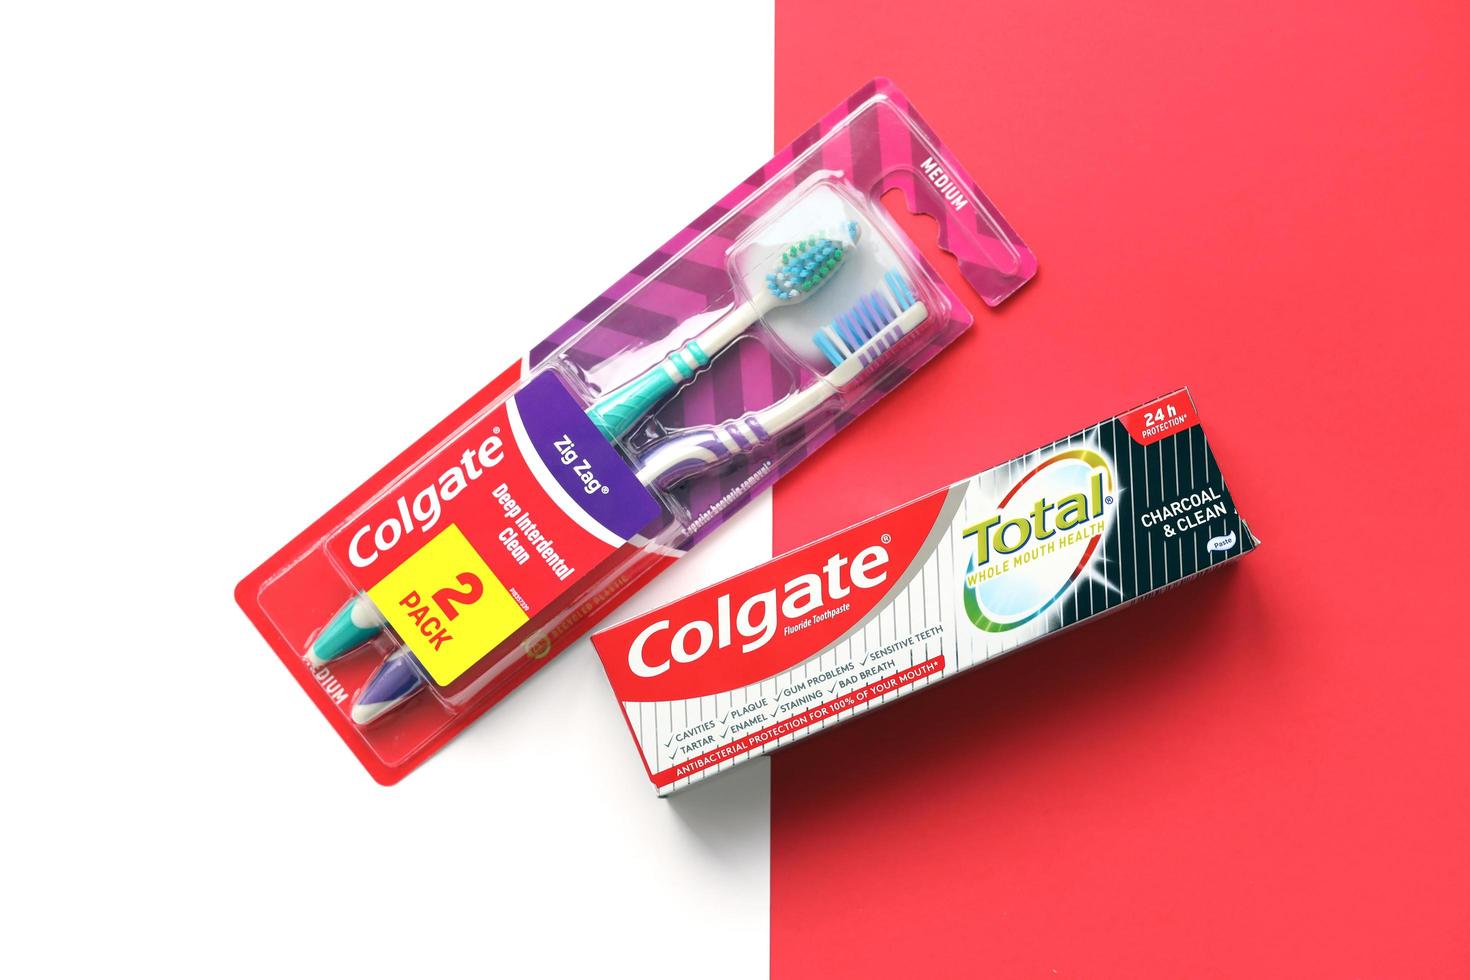 ternopil, ukraine - 23 juin 2022 dentifrice et brosses à dents colgate, une marque de produits d'hygiène bucco-dentaire fabriqués par la société américaine de biens de consommation colgate-palmolive photo